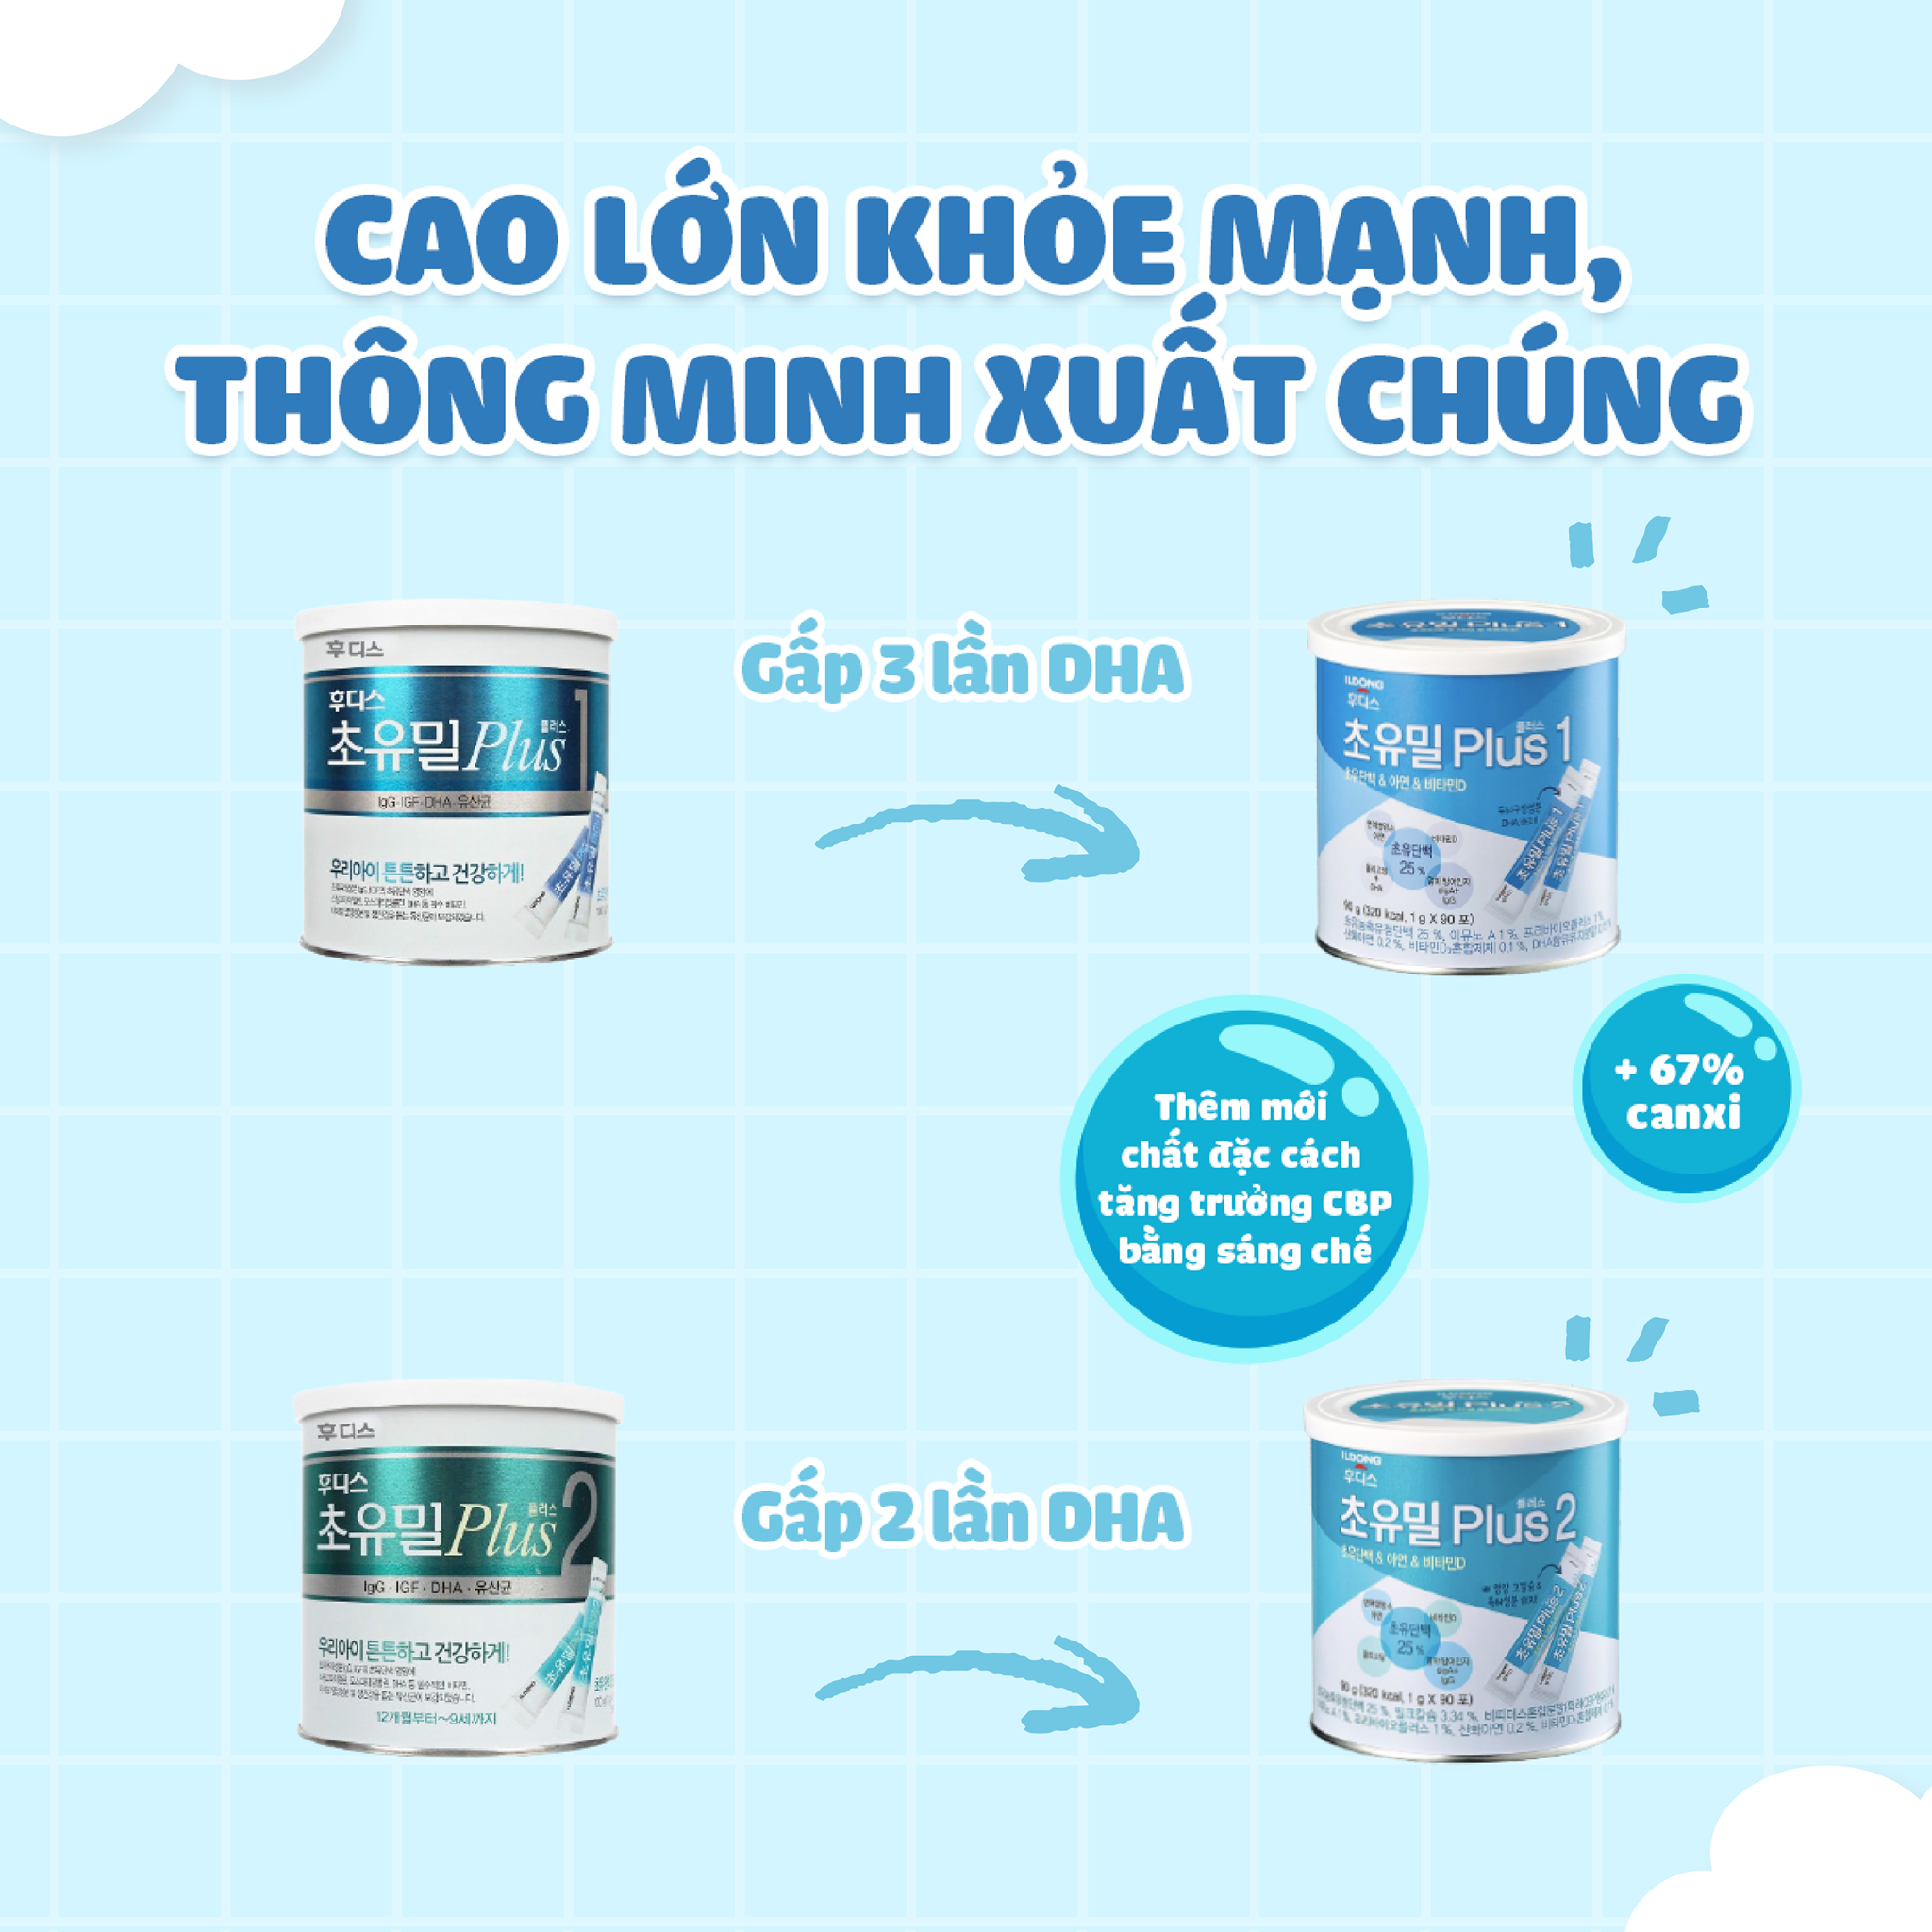 Sữa Non ILDong Số 1 (0-12 Tháng) - Nhập khẩu Hàn Quốc